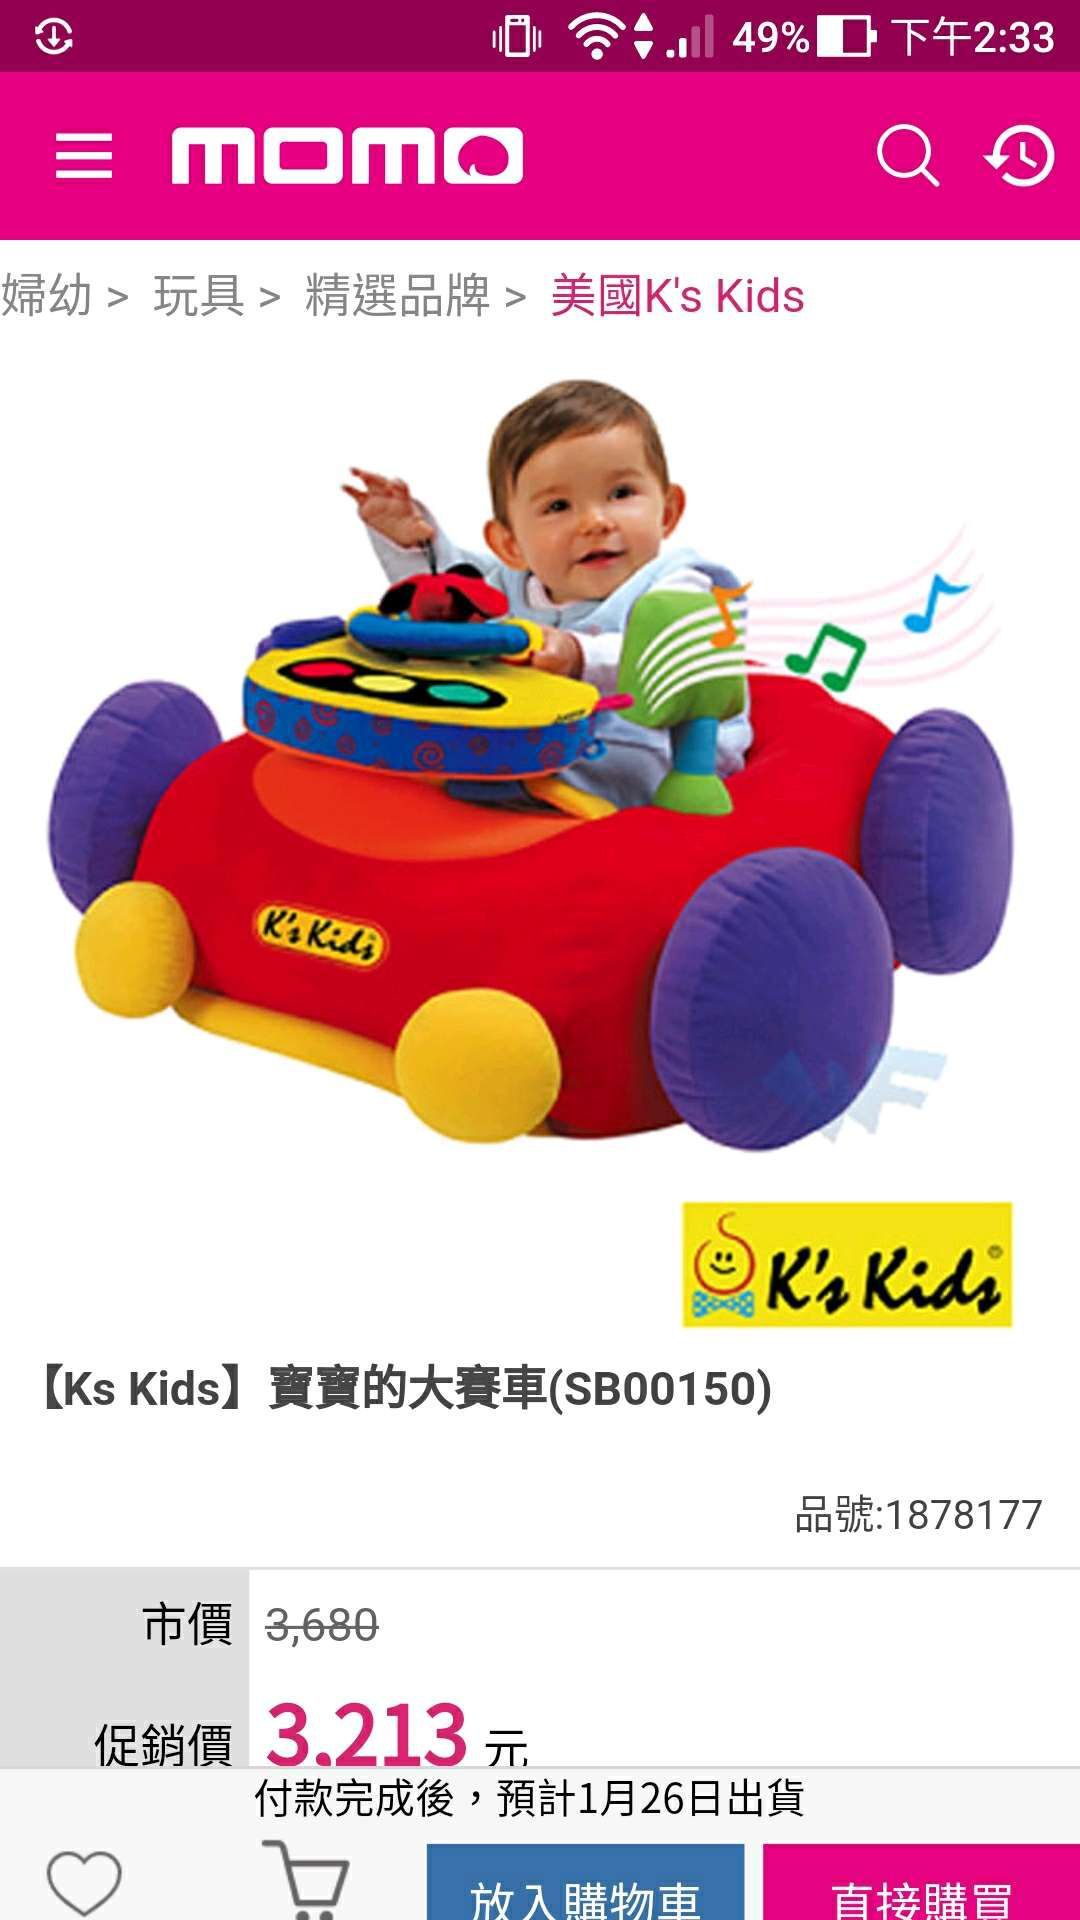 請問有媽咪買過Ks Kids寶寶的大賽車??